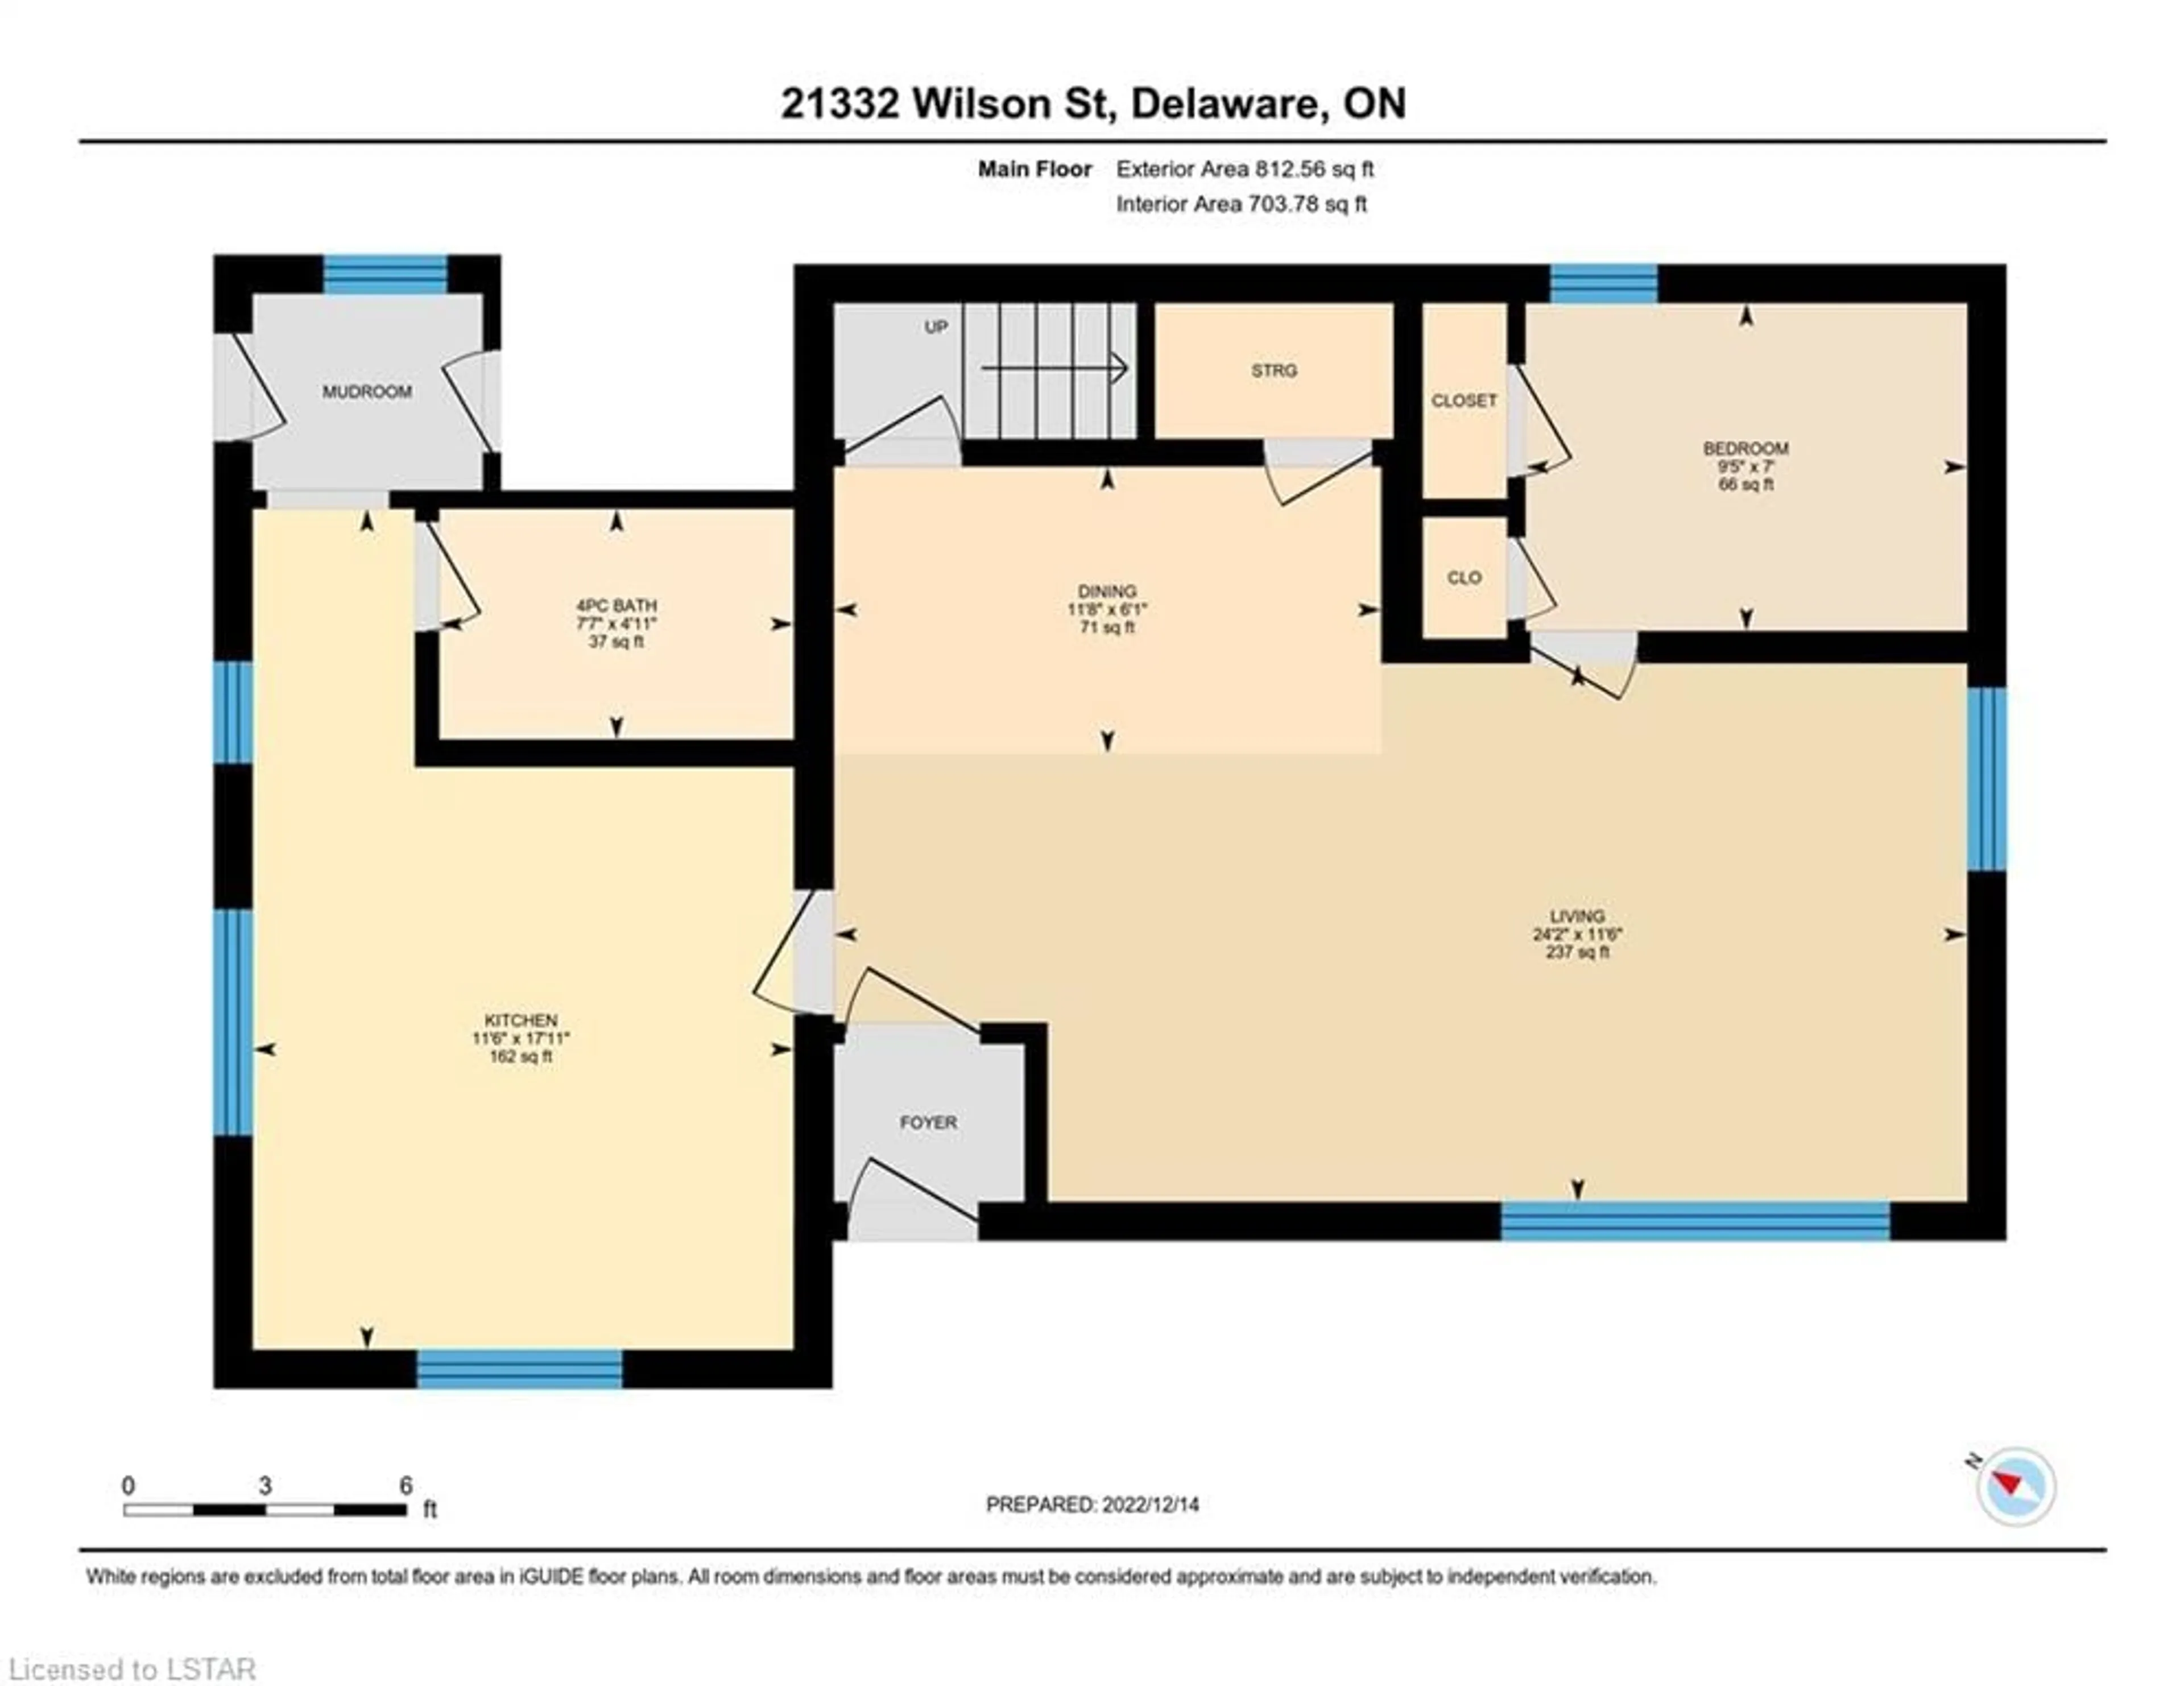 Floor plan for 21332 Wilson St, Delaware Ontario N0L 1E0